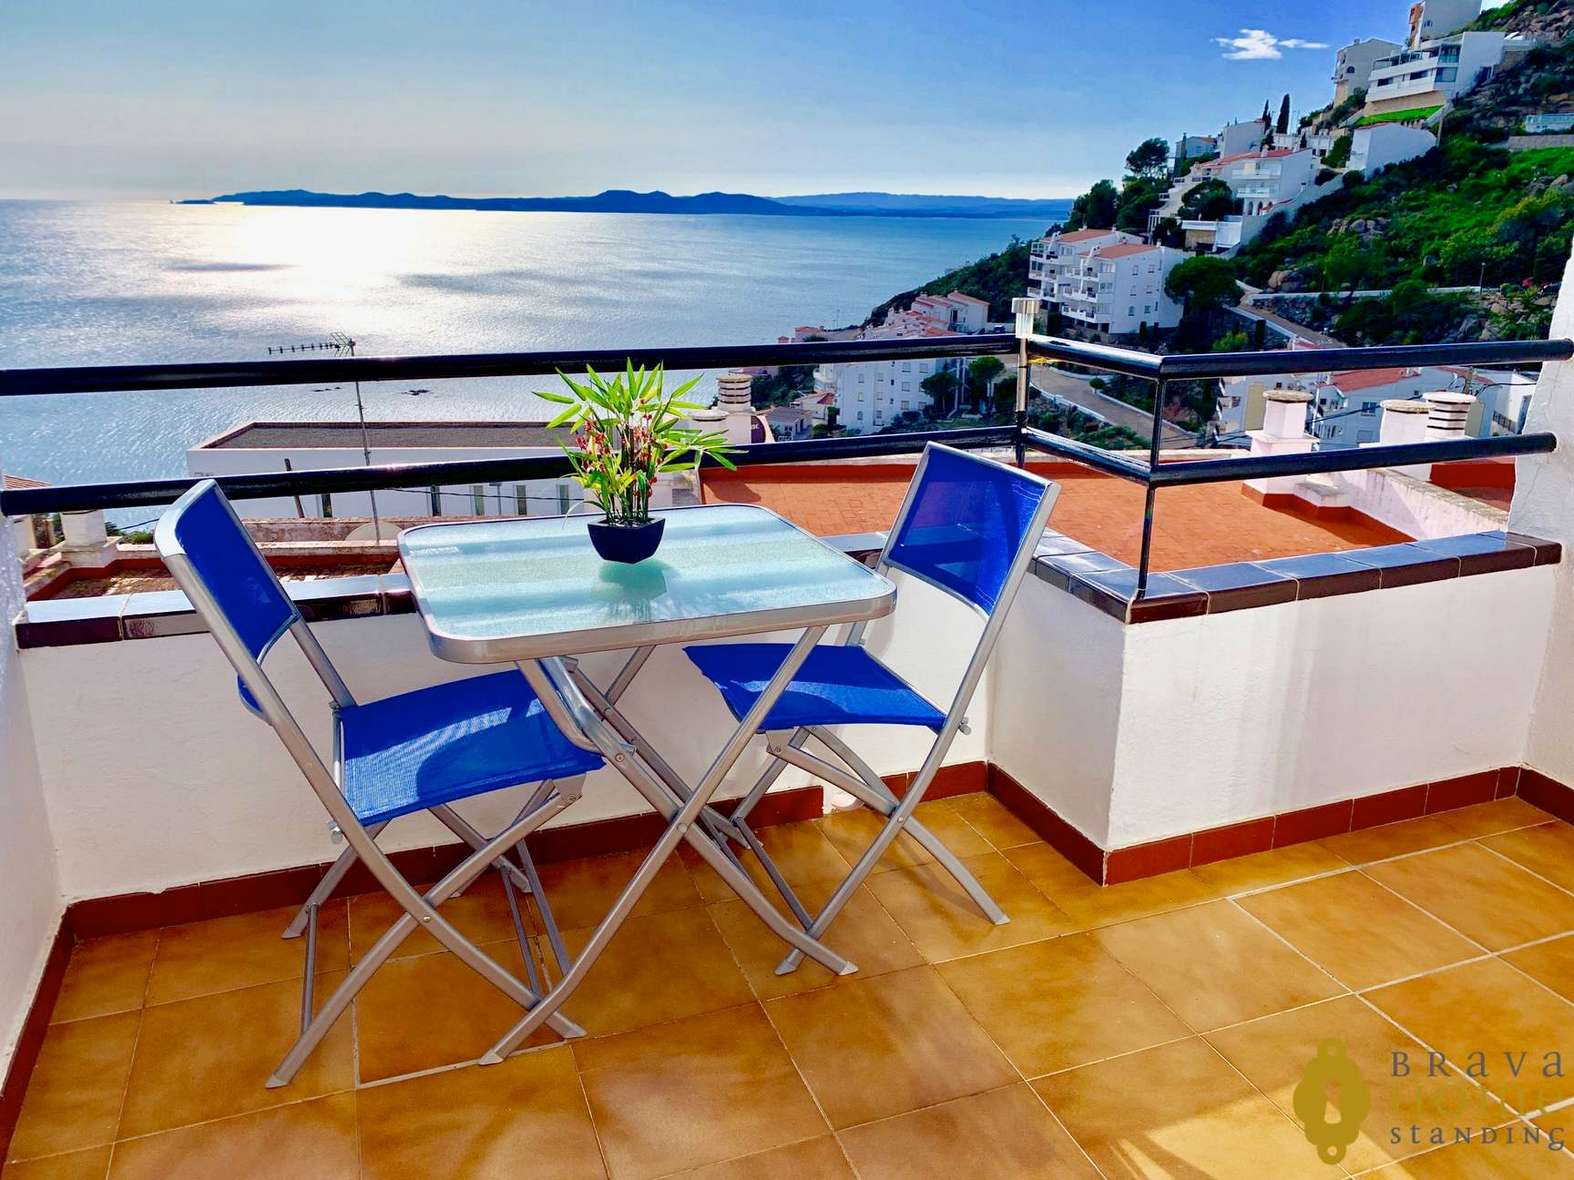 Bonic apartament amb unes esplèndides vistes del mar en venda a Roses